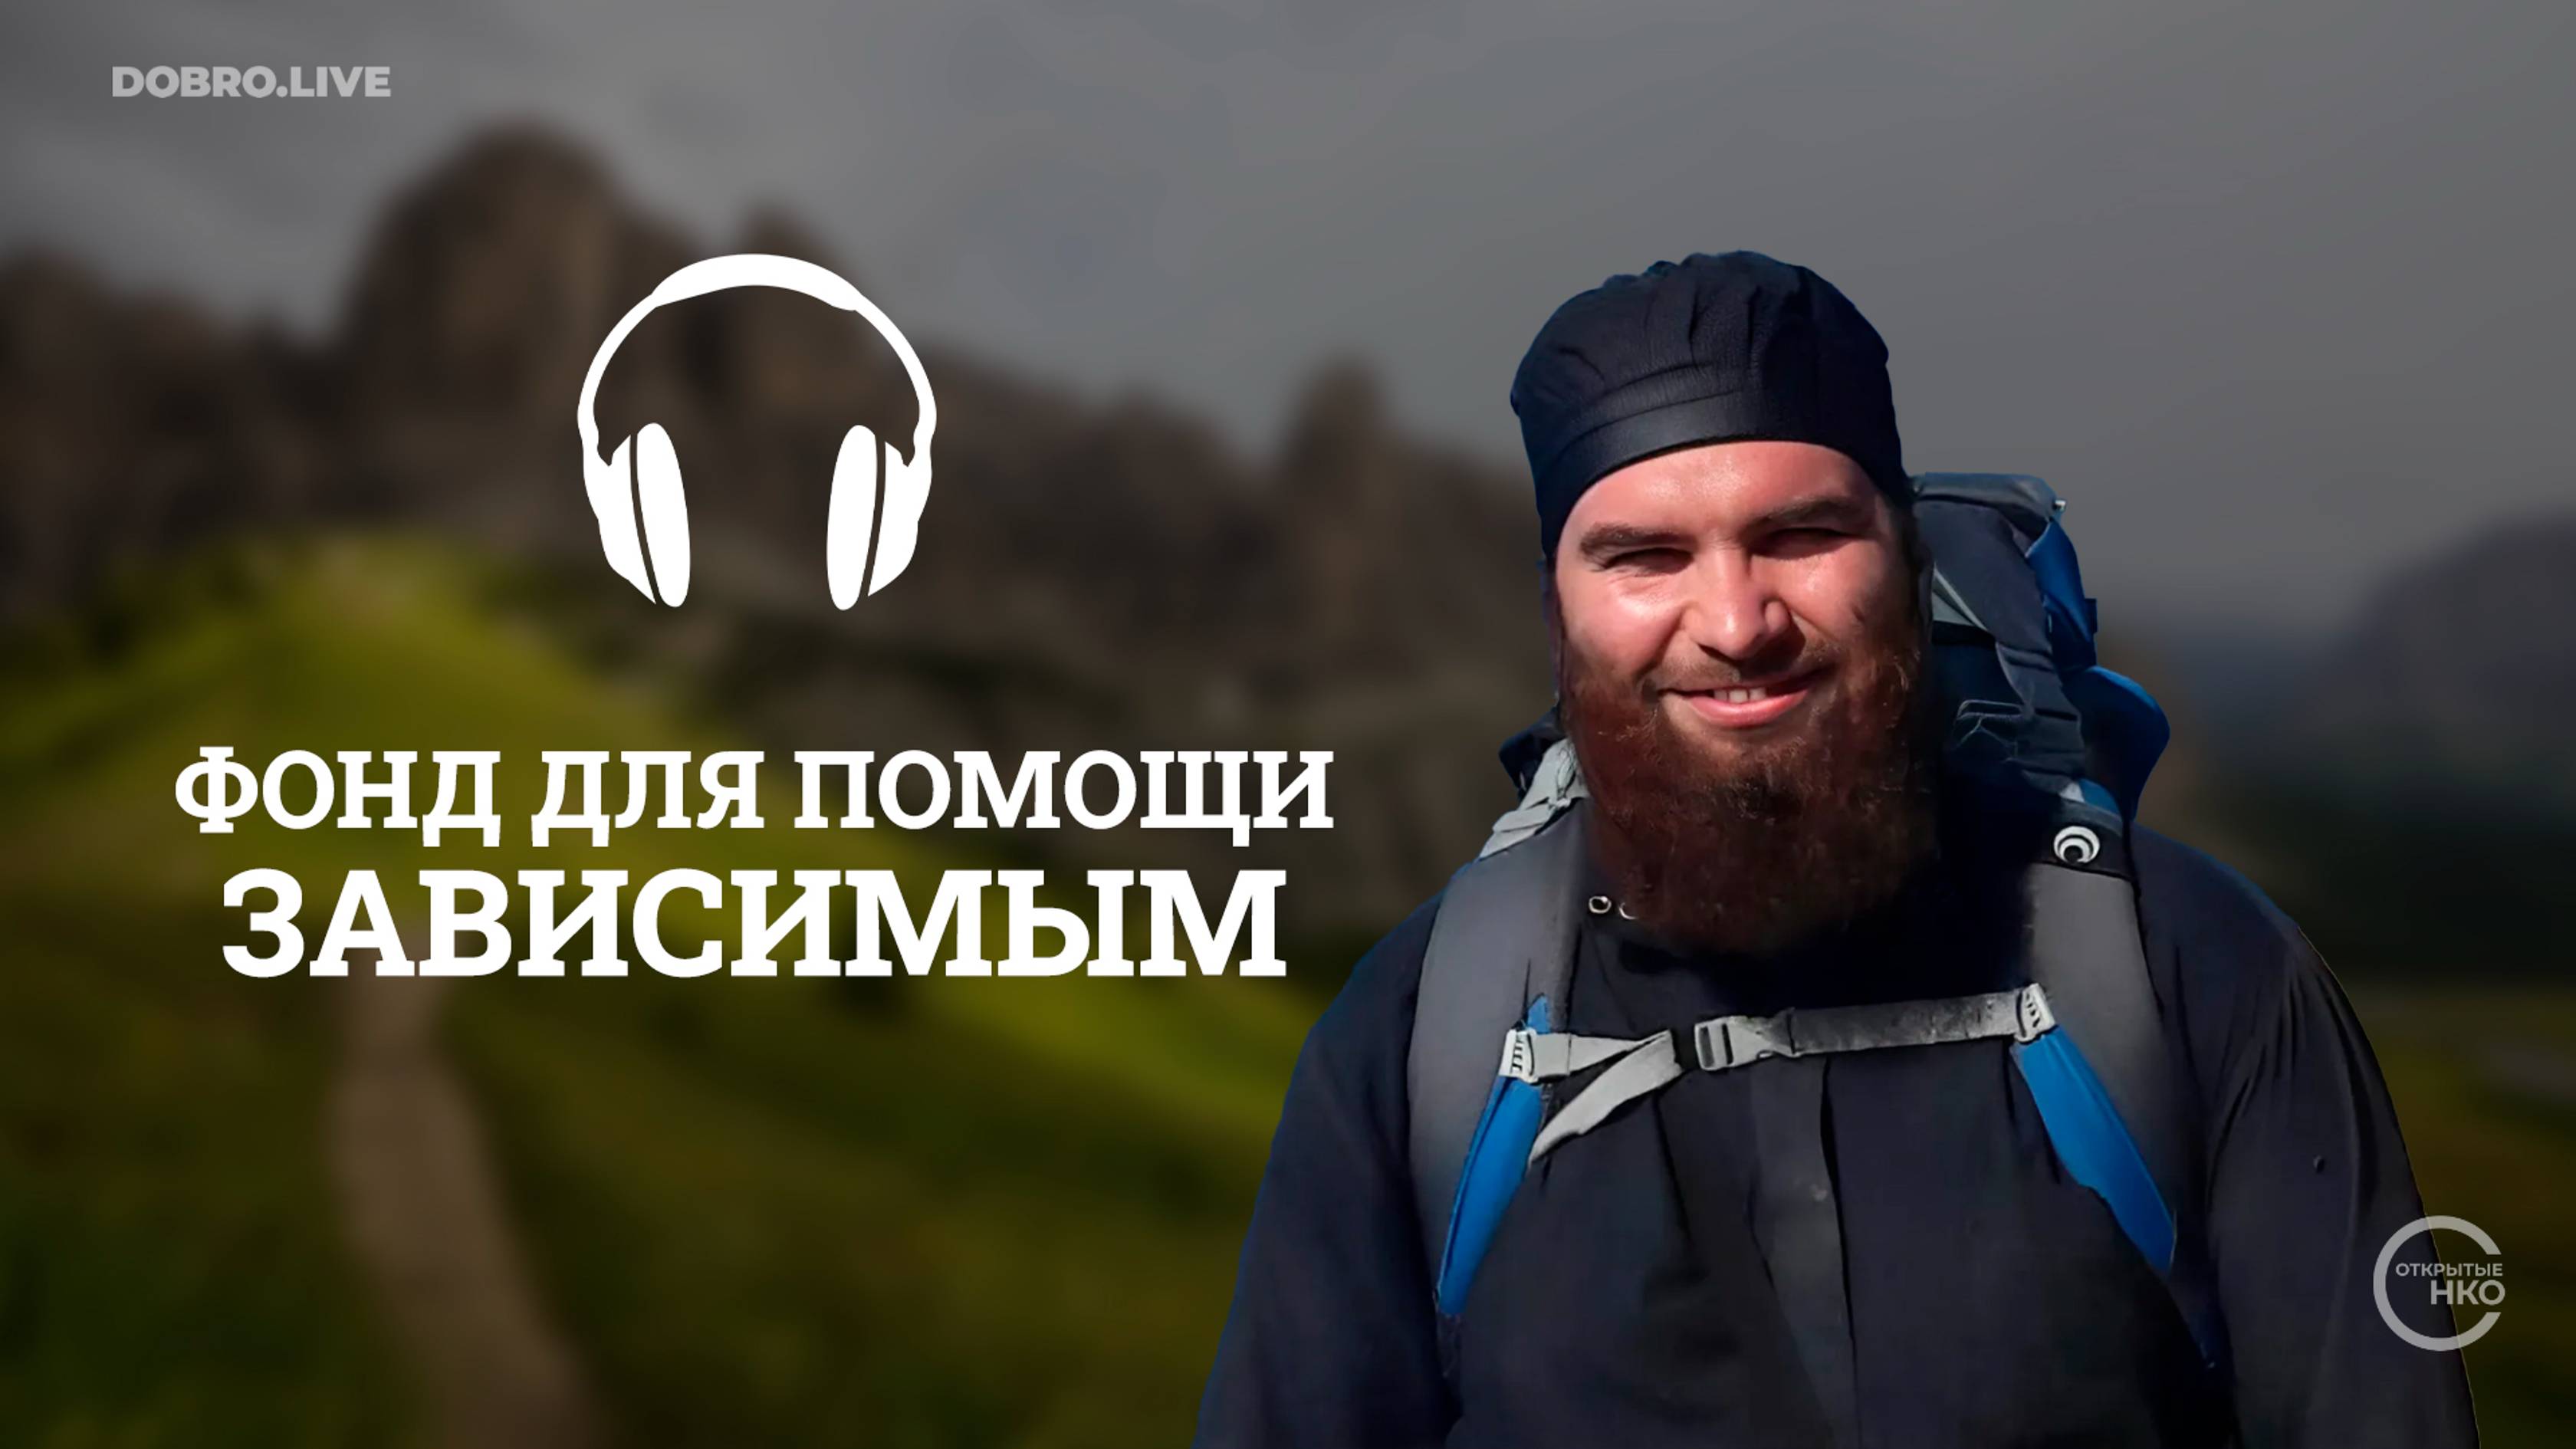 Батюшка из Воронежской области организовал благотворительный фонд для помощи зависимым и не только